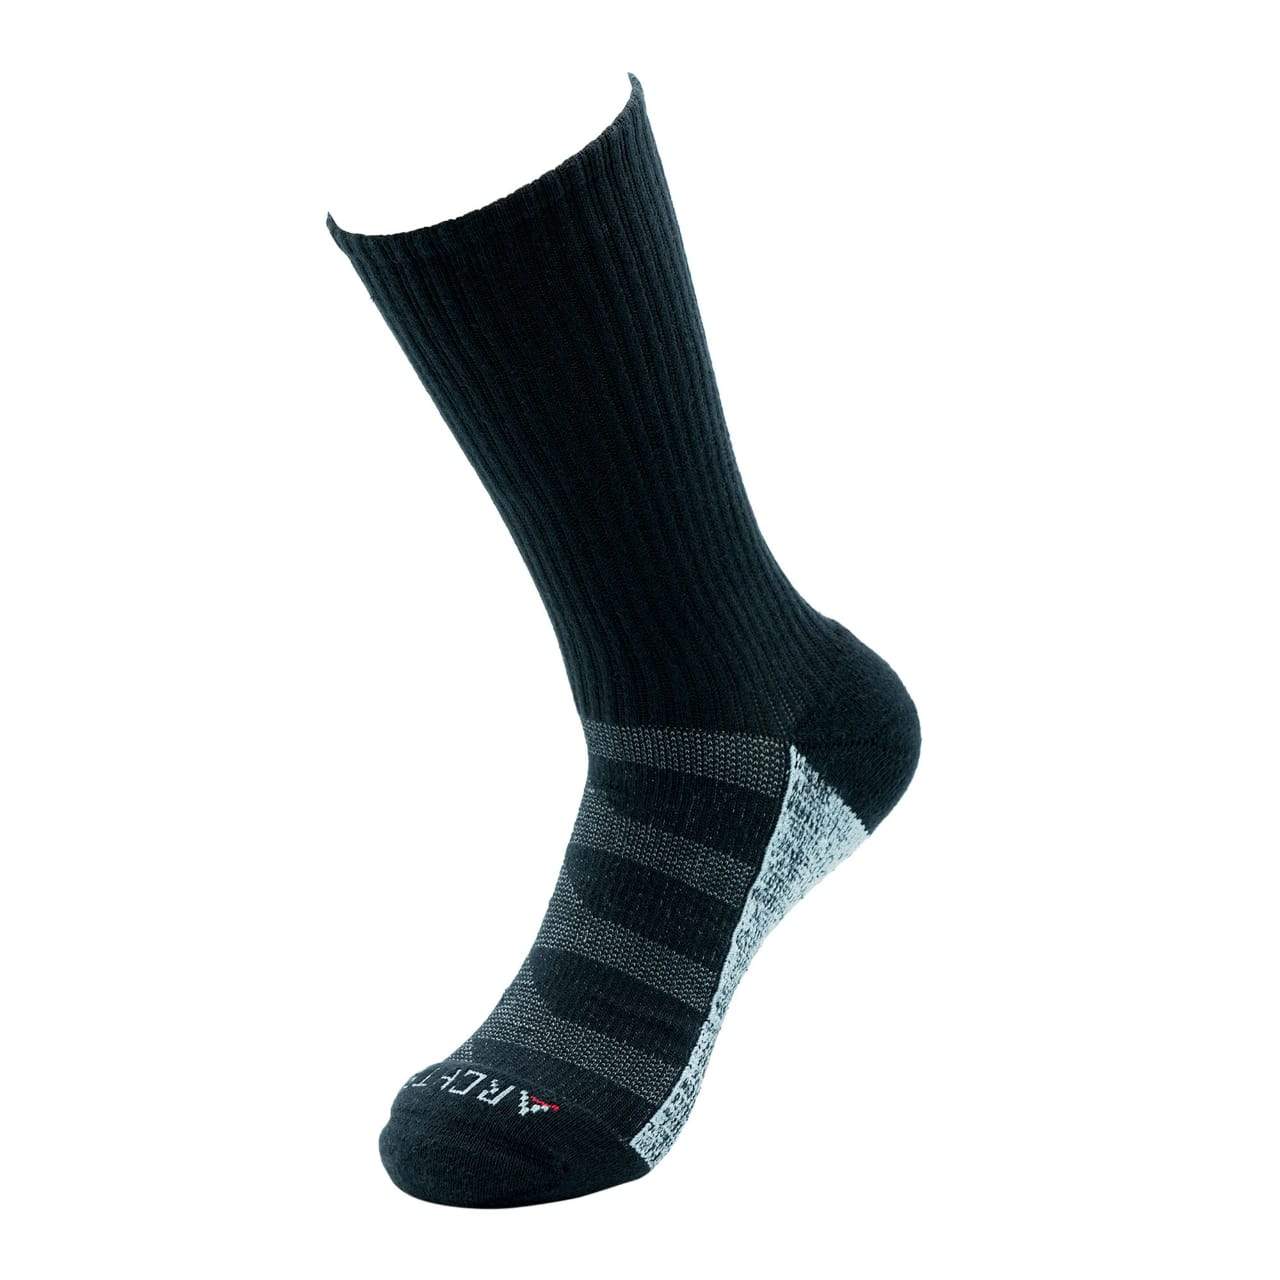 ArchTek® Socks (2 Pack Combo) upsell ArchTek 